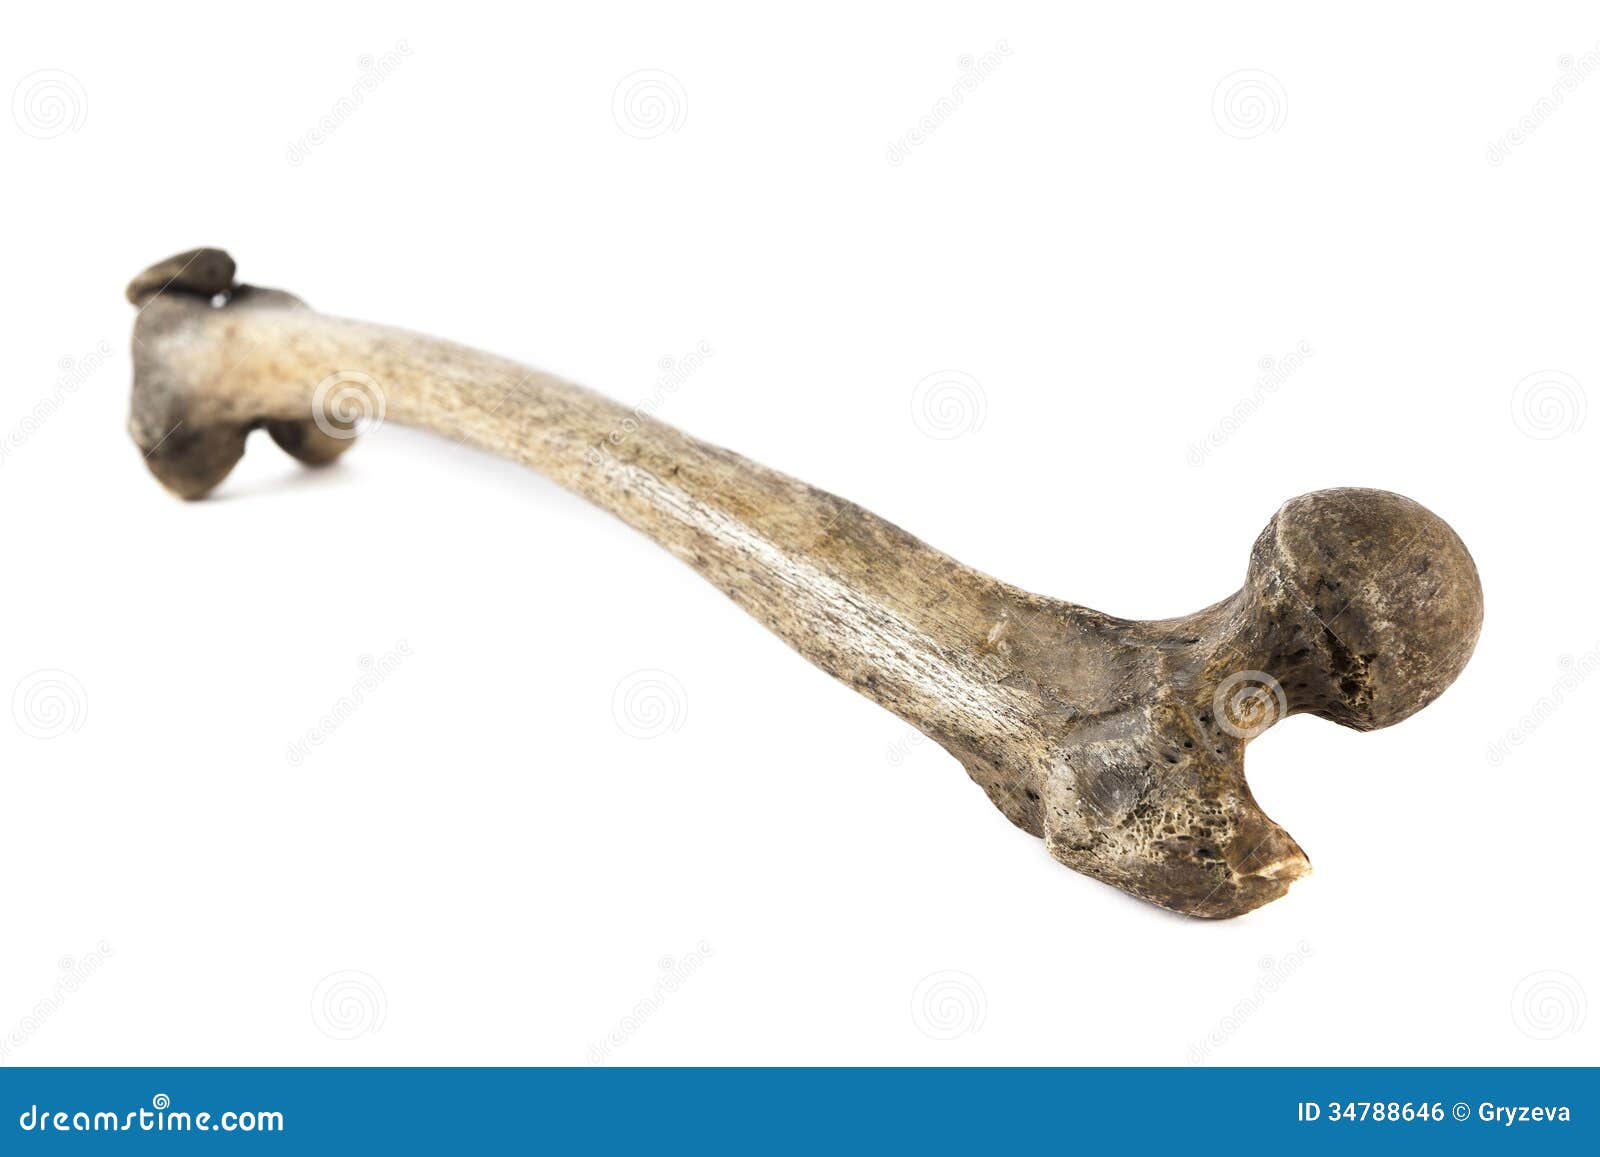 Old bone. Старинная кость человека.